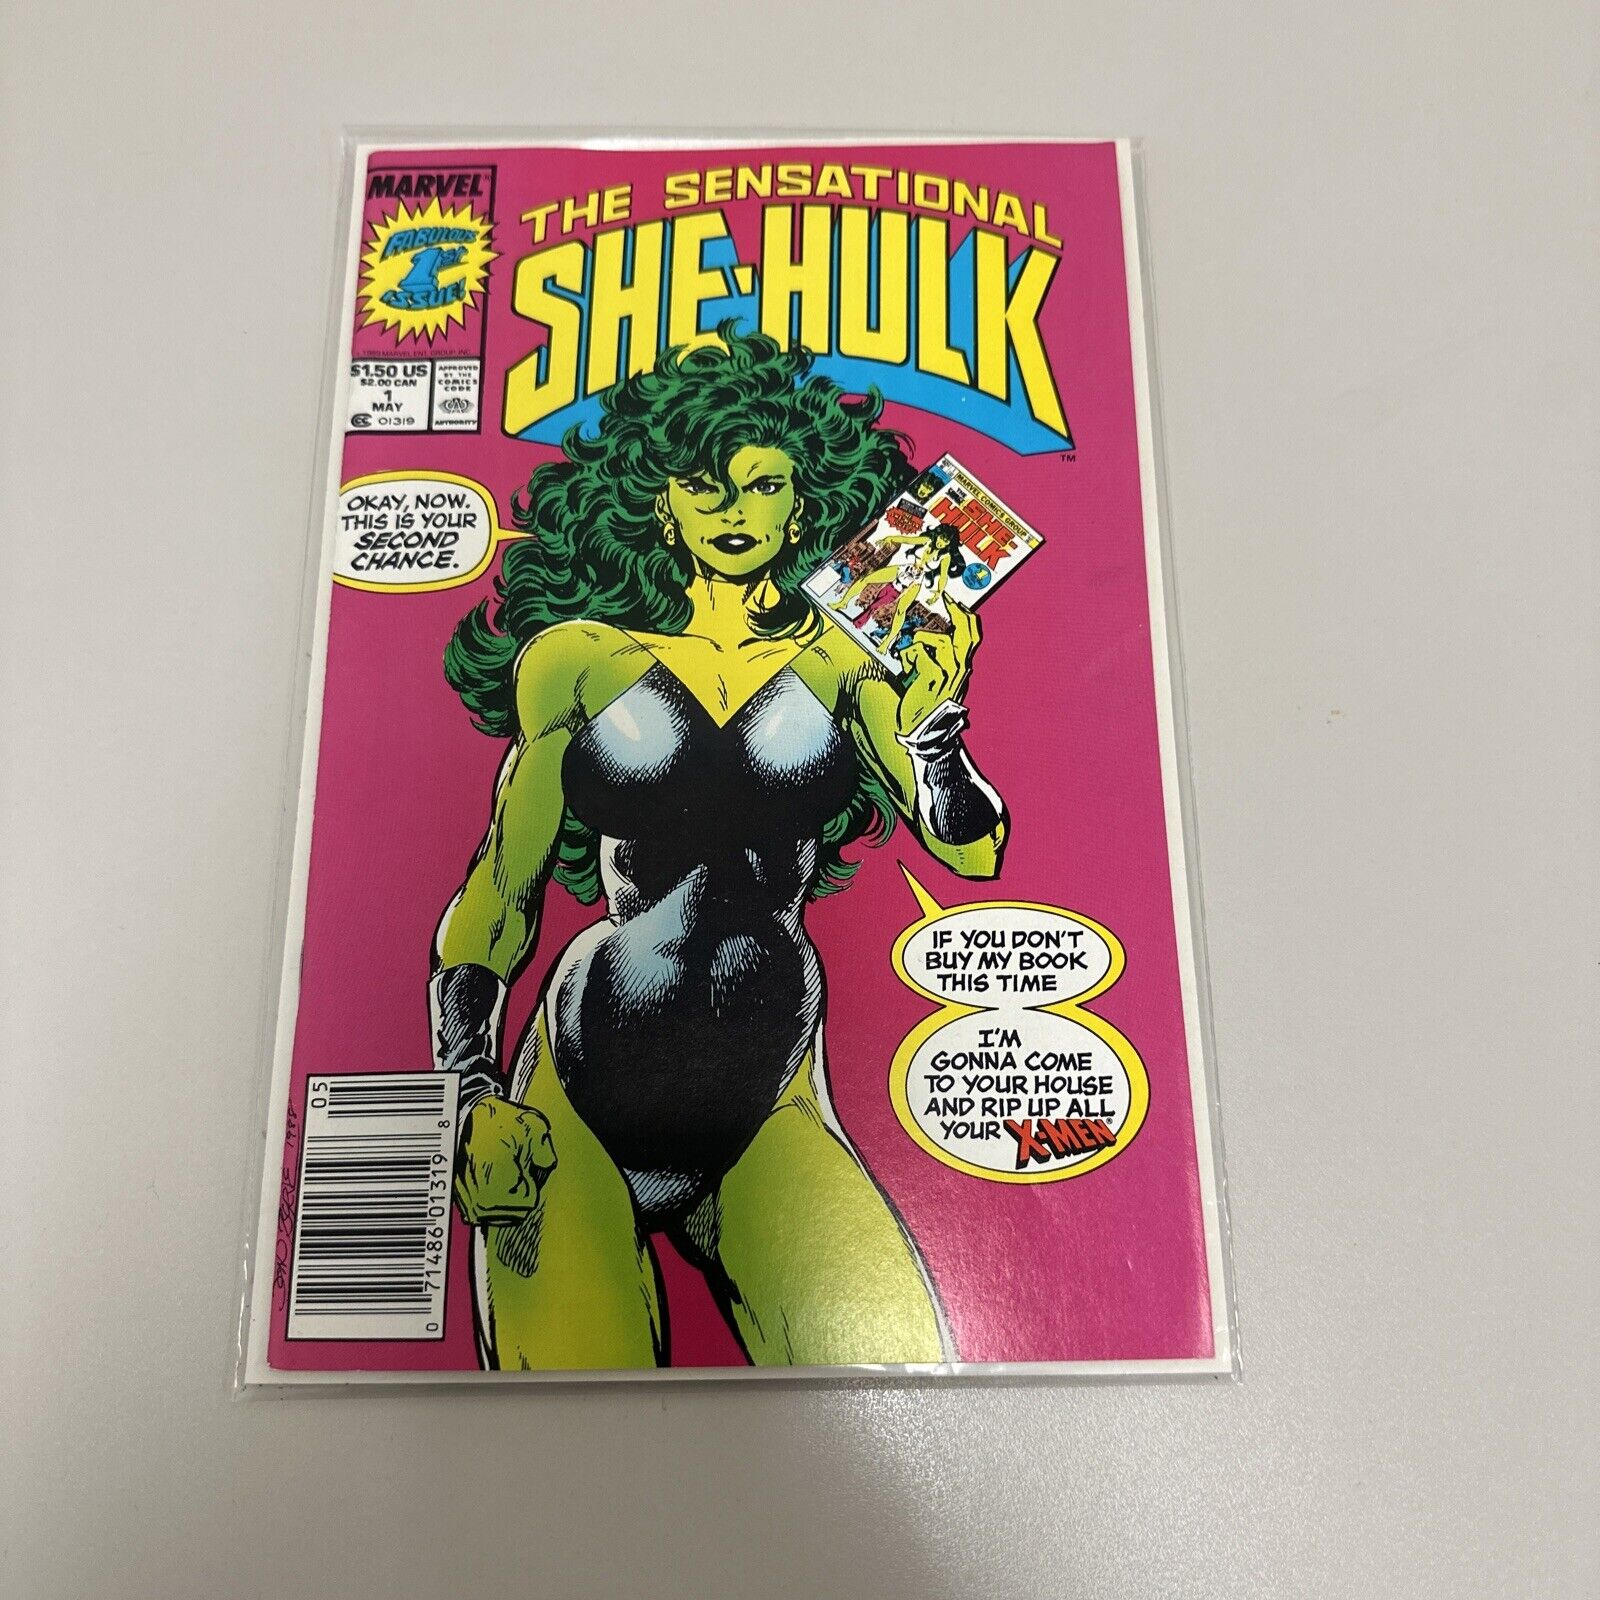 The Sensational She-Hulk #1 Marvel Comics John Byrne 1989 HIGH GRADE